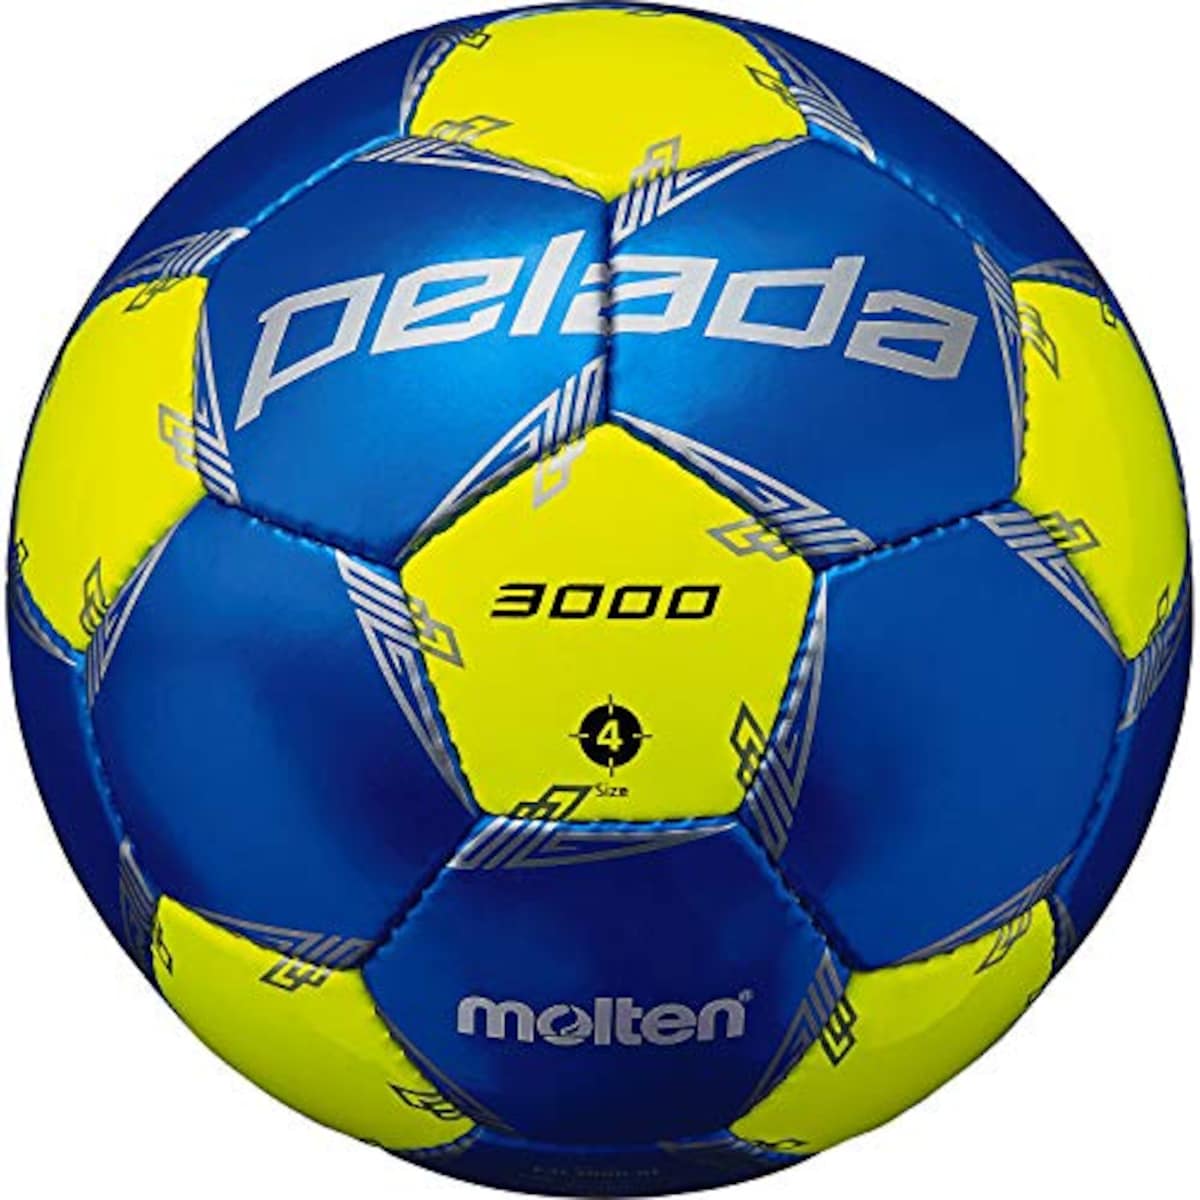 サッカーボール 4号球(小学生用) ペレーダ【2020年モデル】 検定球画像